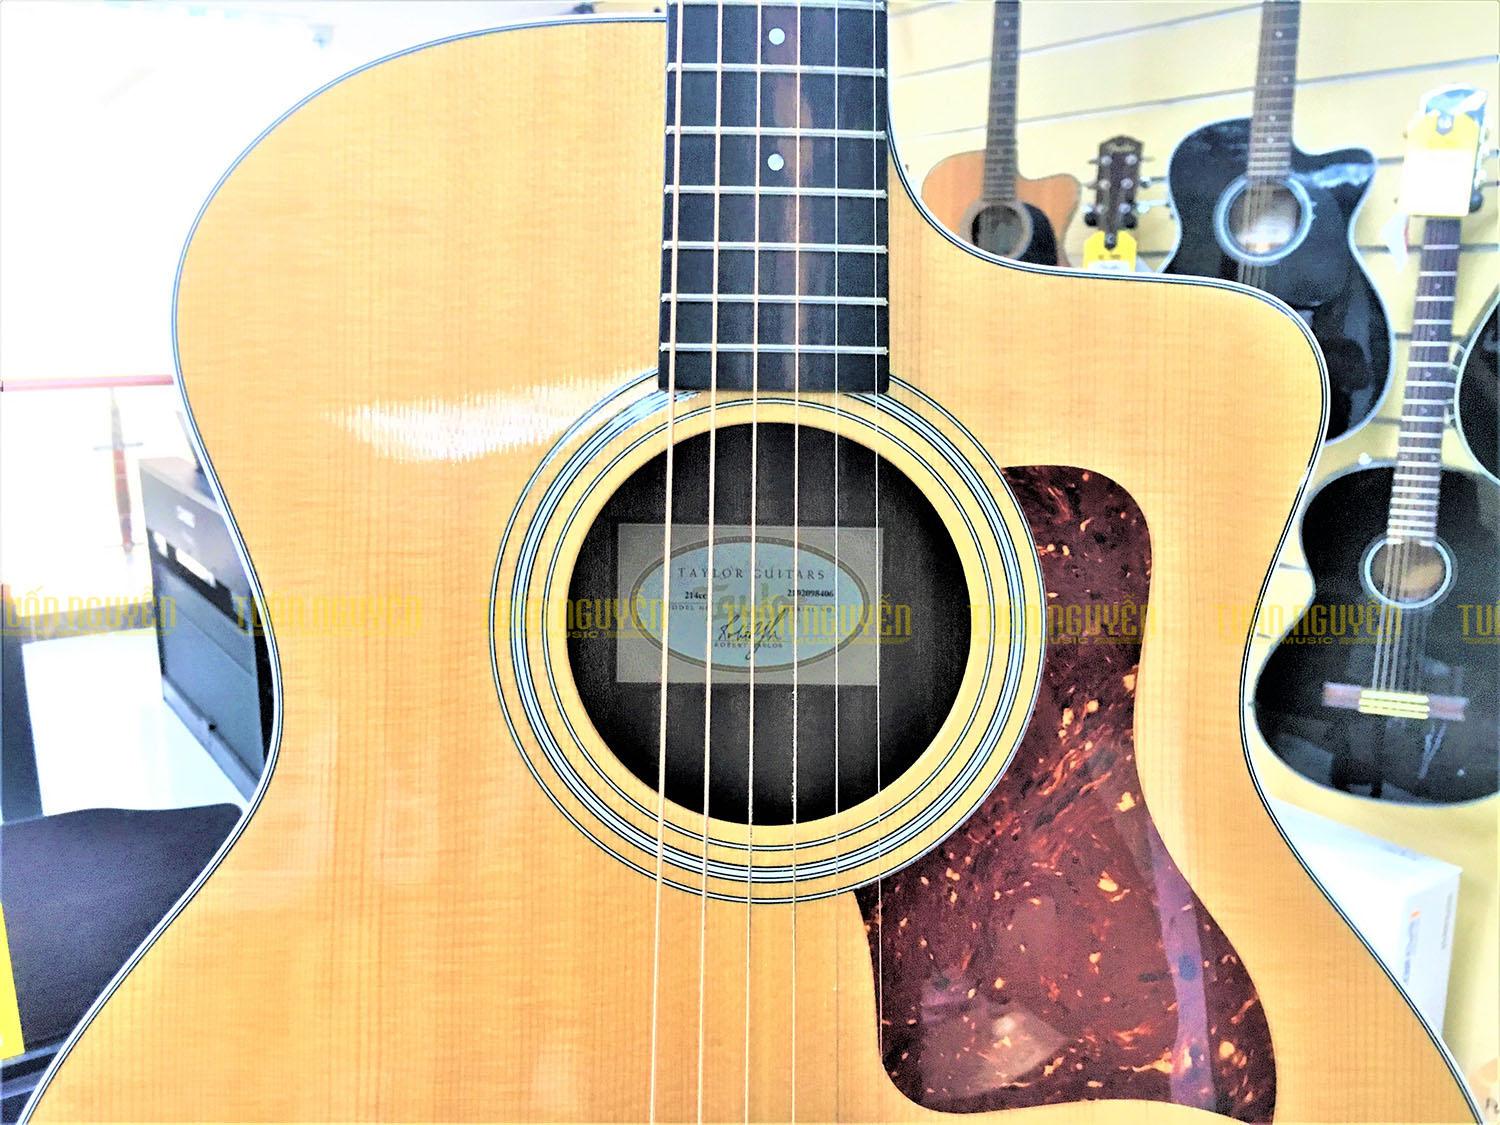 Đàn guitar acoustic Taylor 214CE mặt top có chất liệu sitka spruce